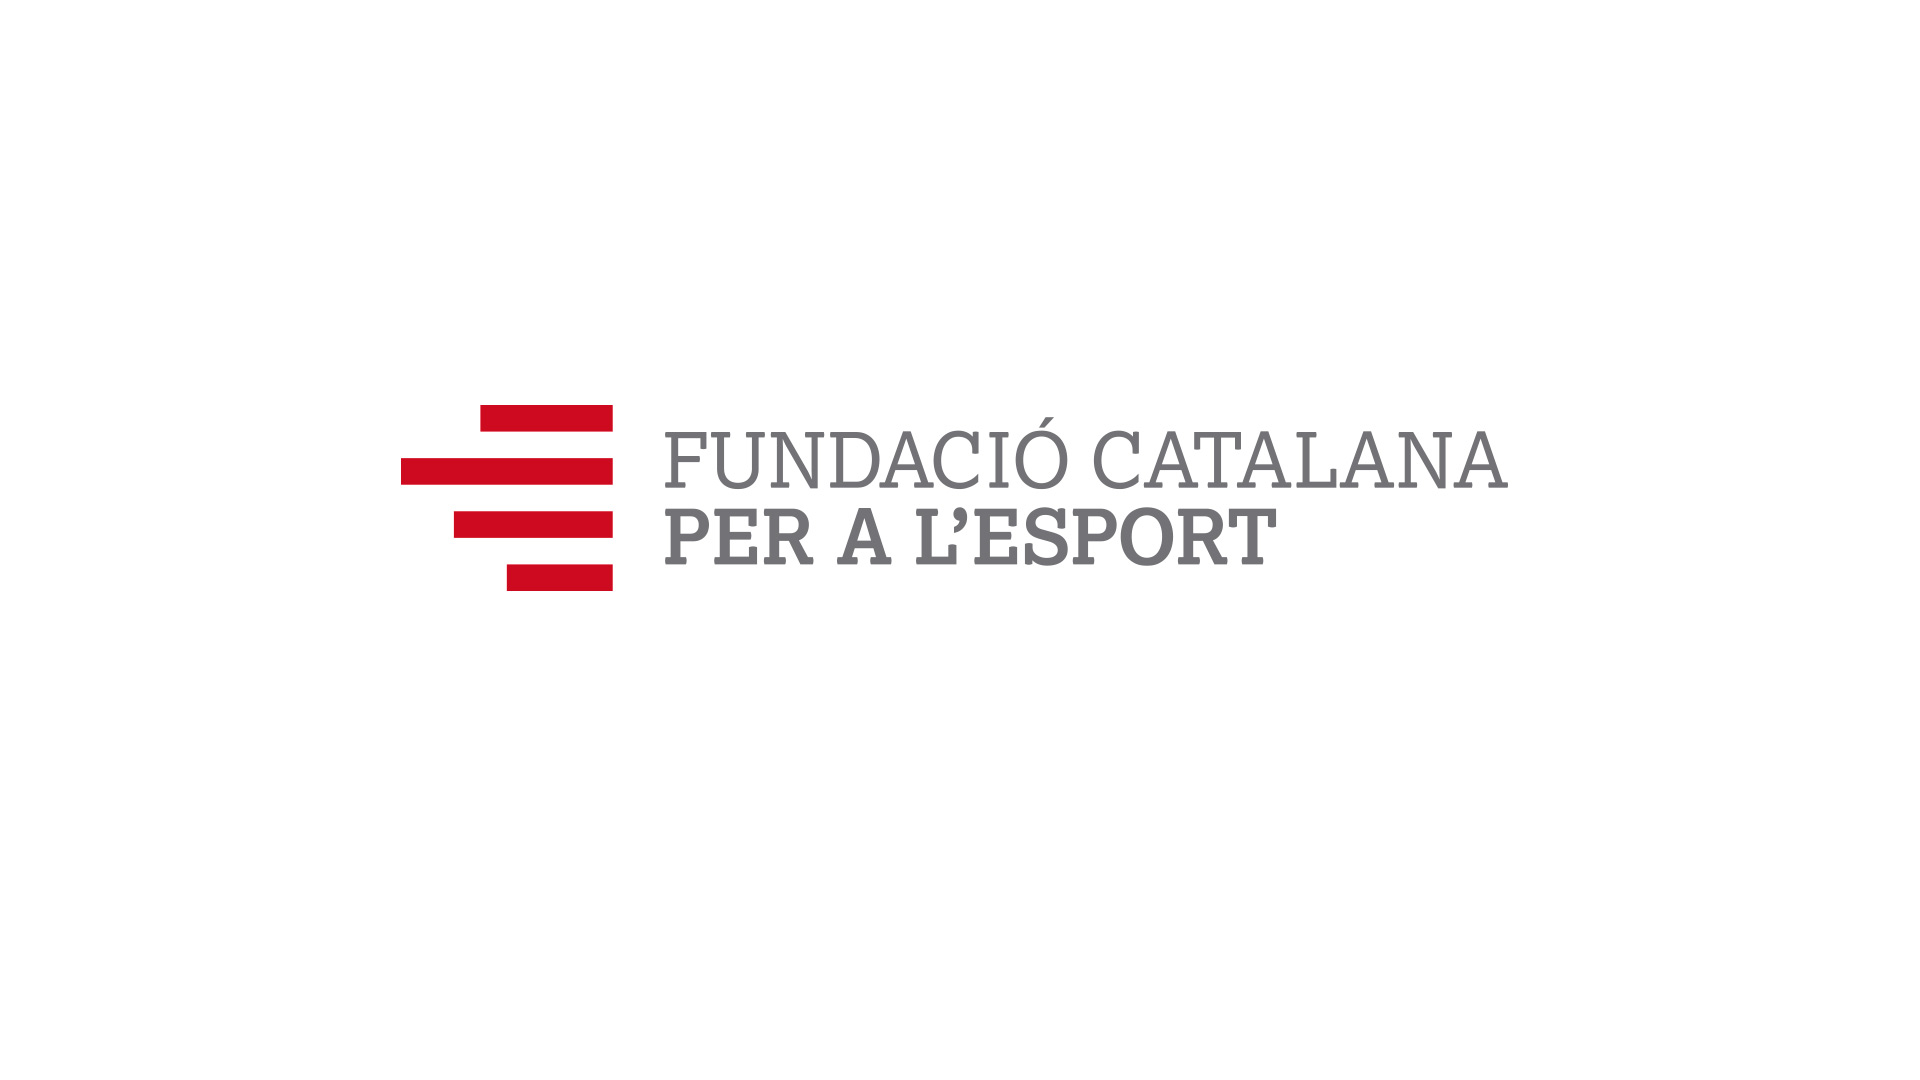 Diseño marca e identidad corporativa Fundació Catalana per a l'Esport - Marca